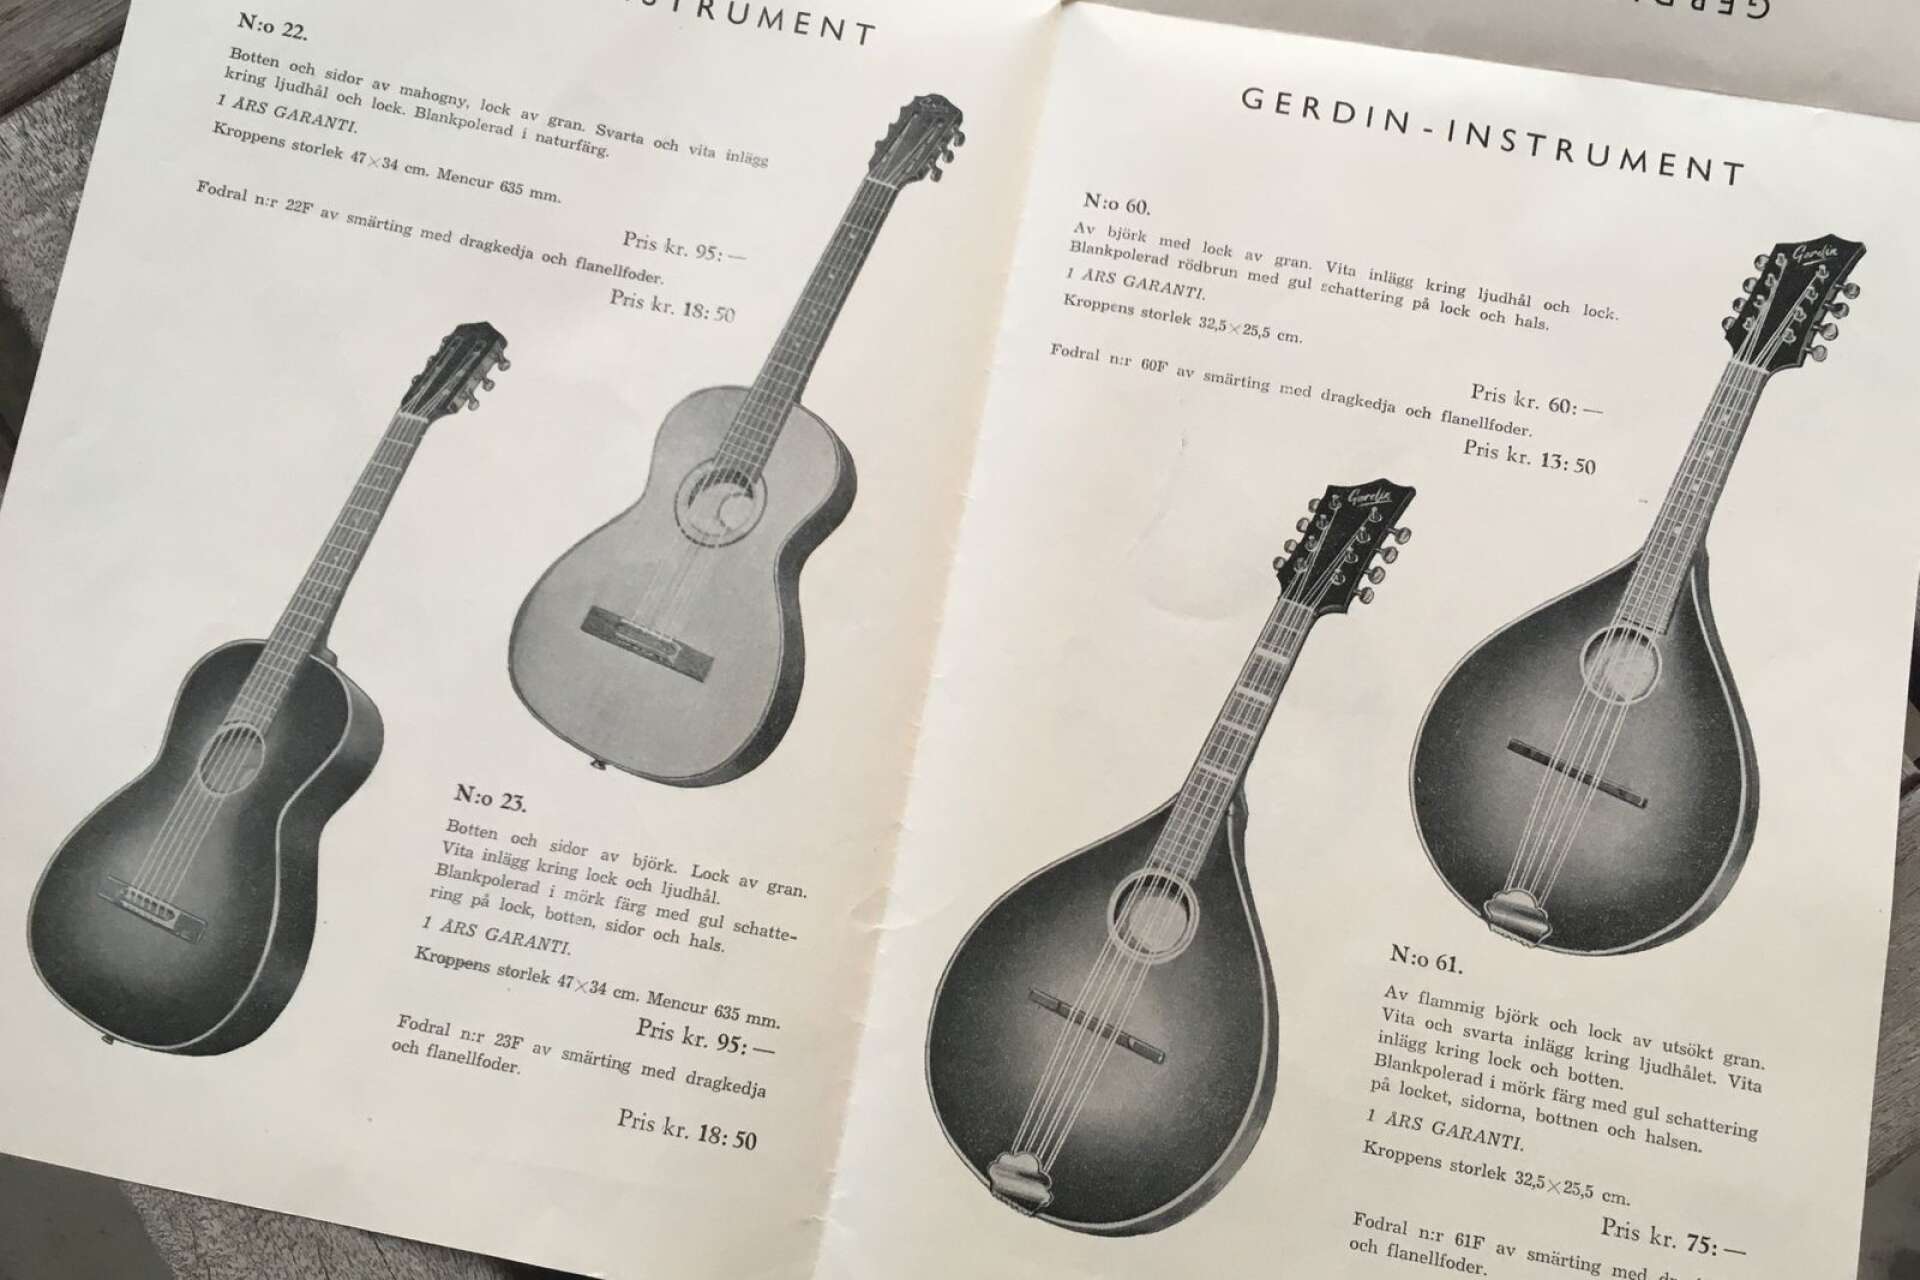 Gerdin hade ett brett sortiment. I reklamfoldern från 1951 presenteras 13 olika gitarrer och mandoliner.